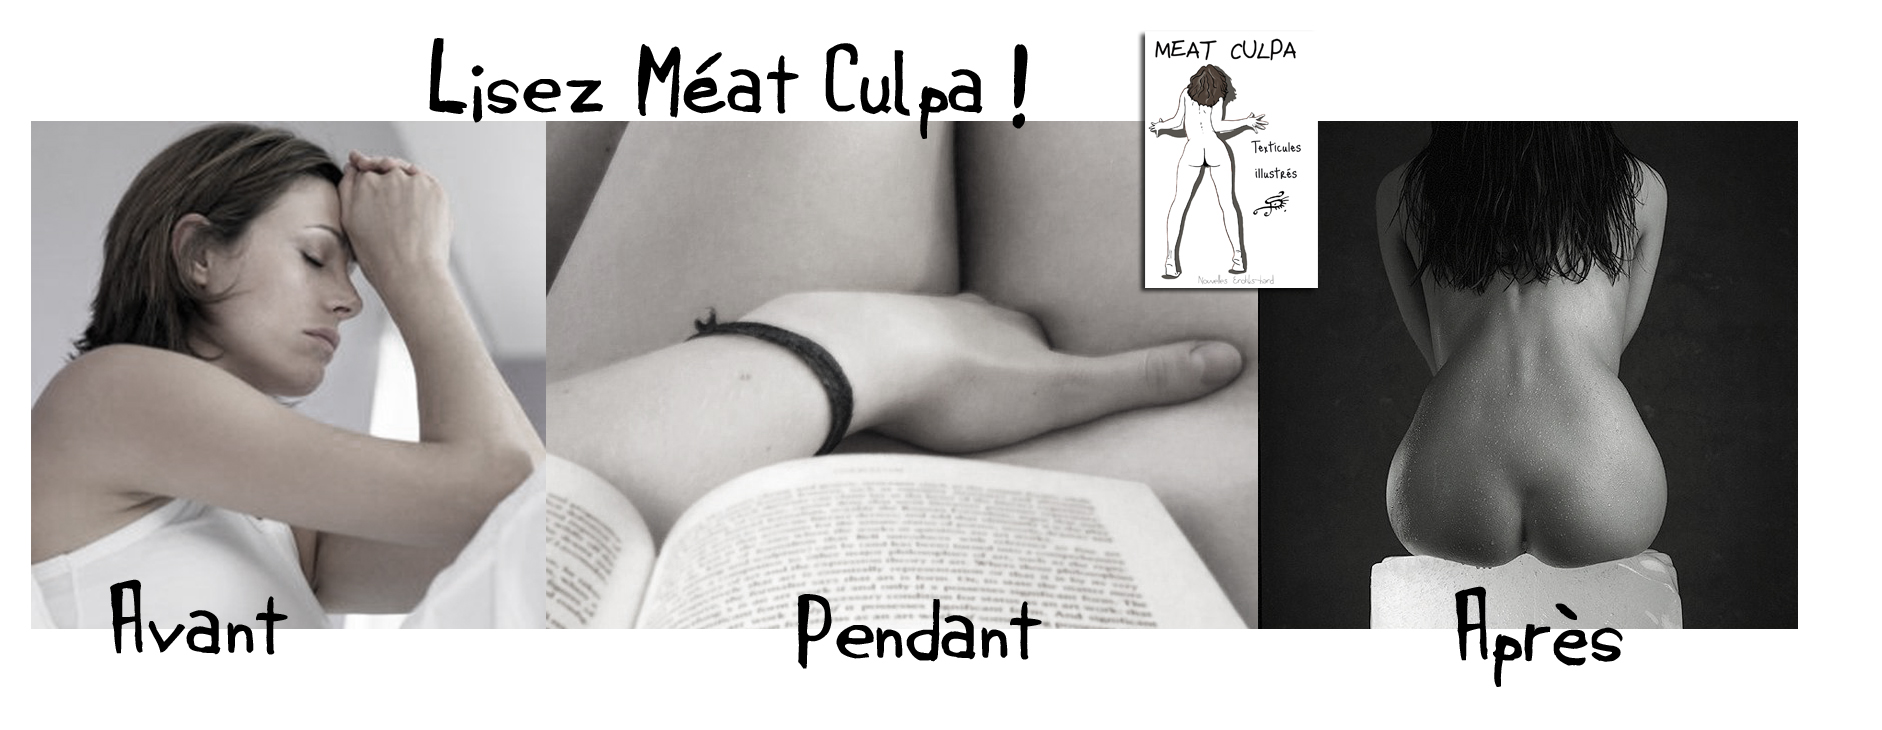 meat-culpa